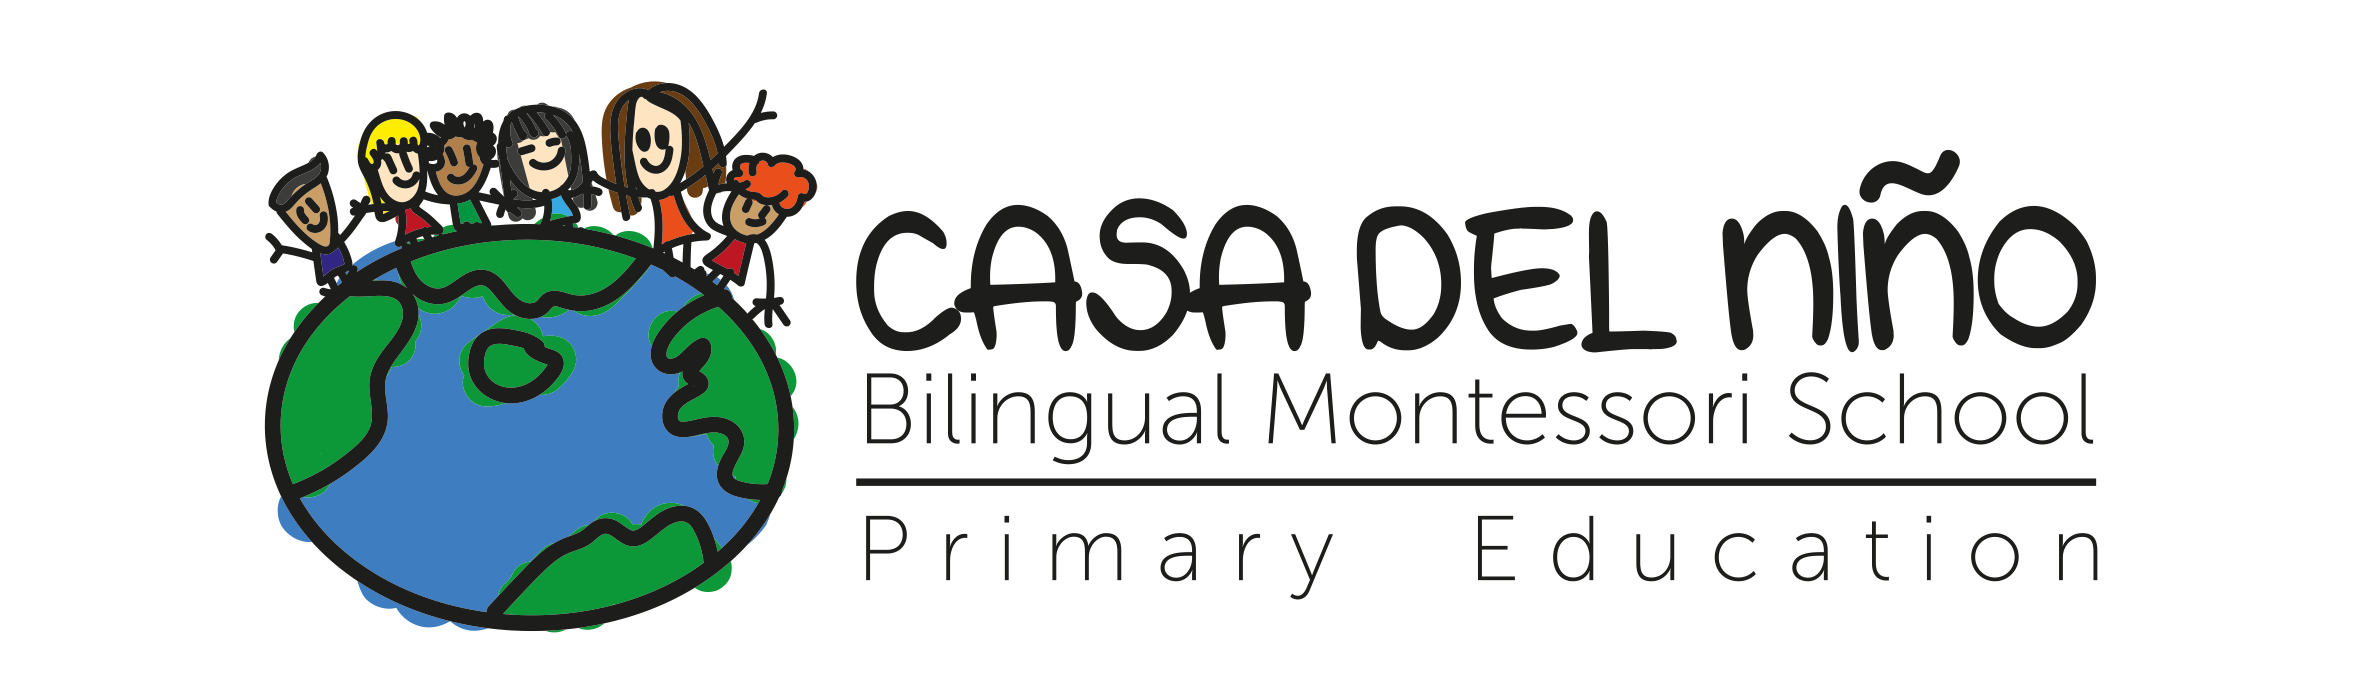 Casa del Niño Bilingual Montessori School